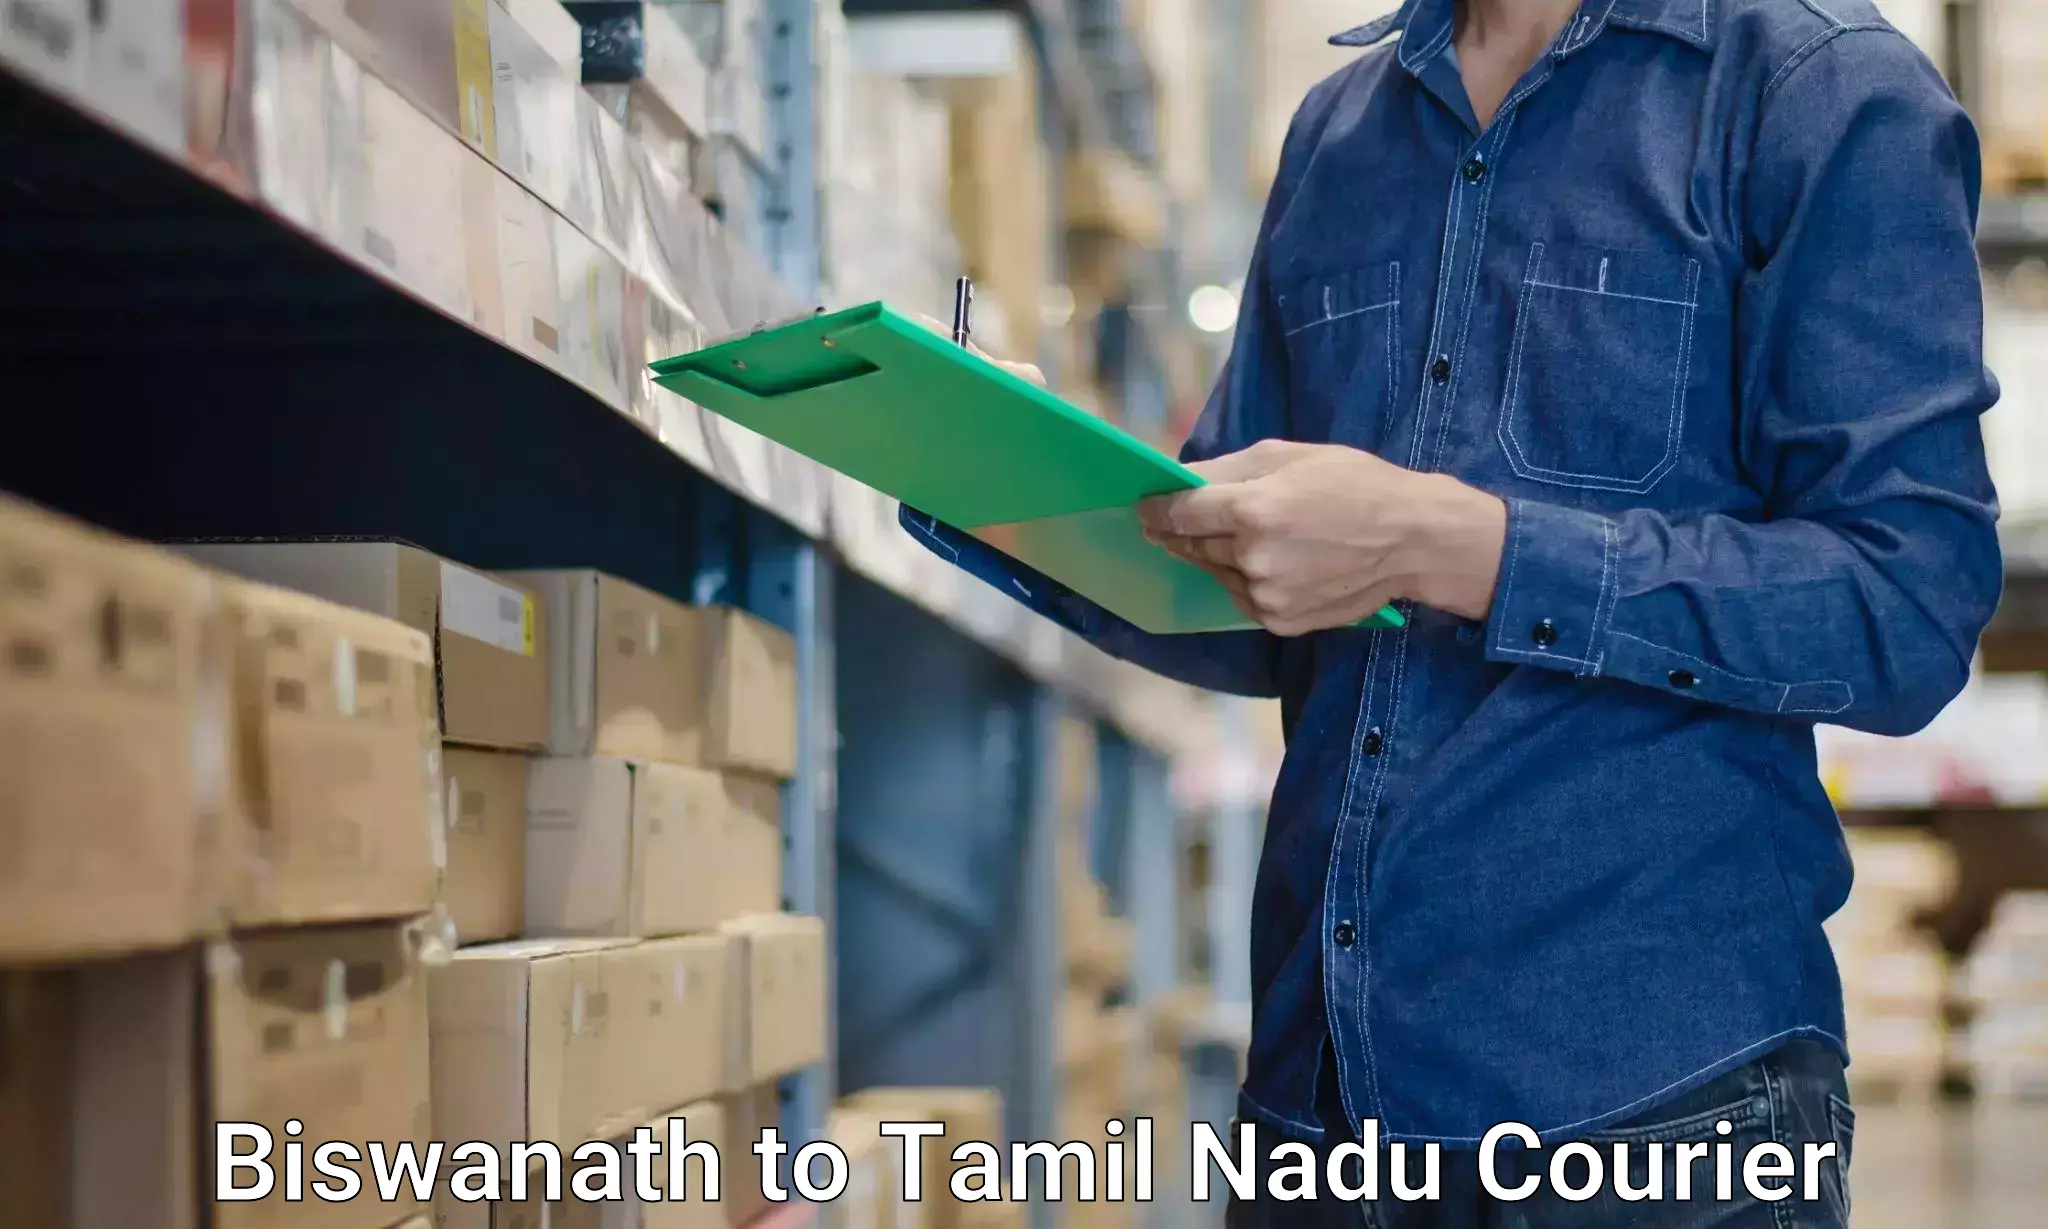 Efficient relocation services Biswanath to Tamil Nadu